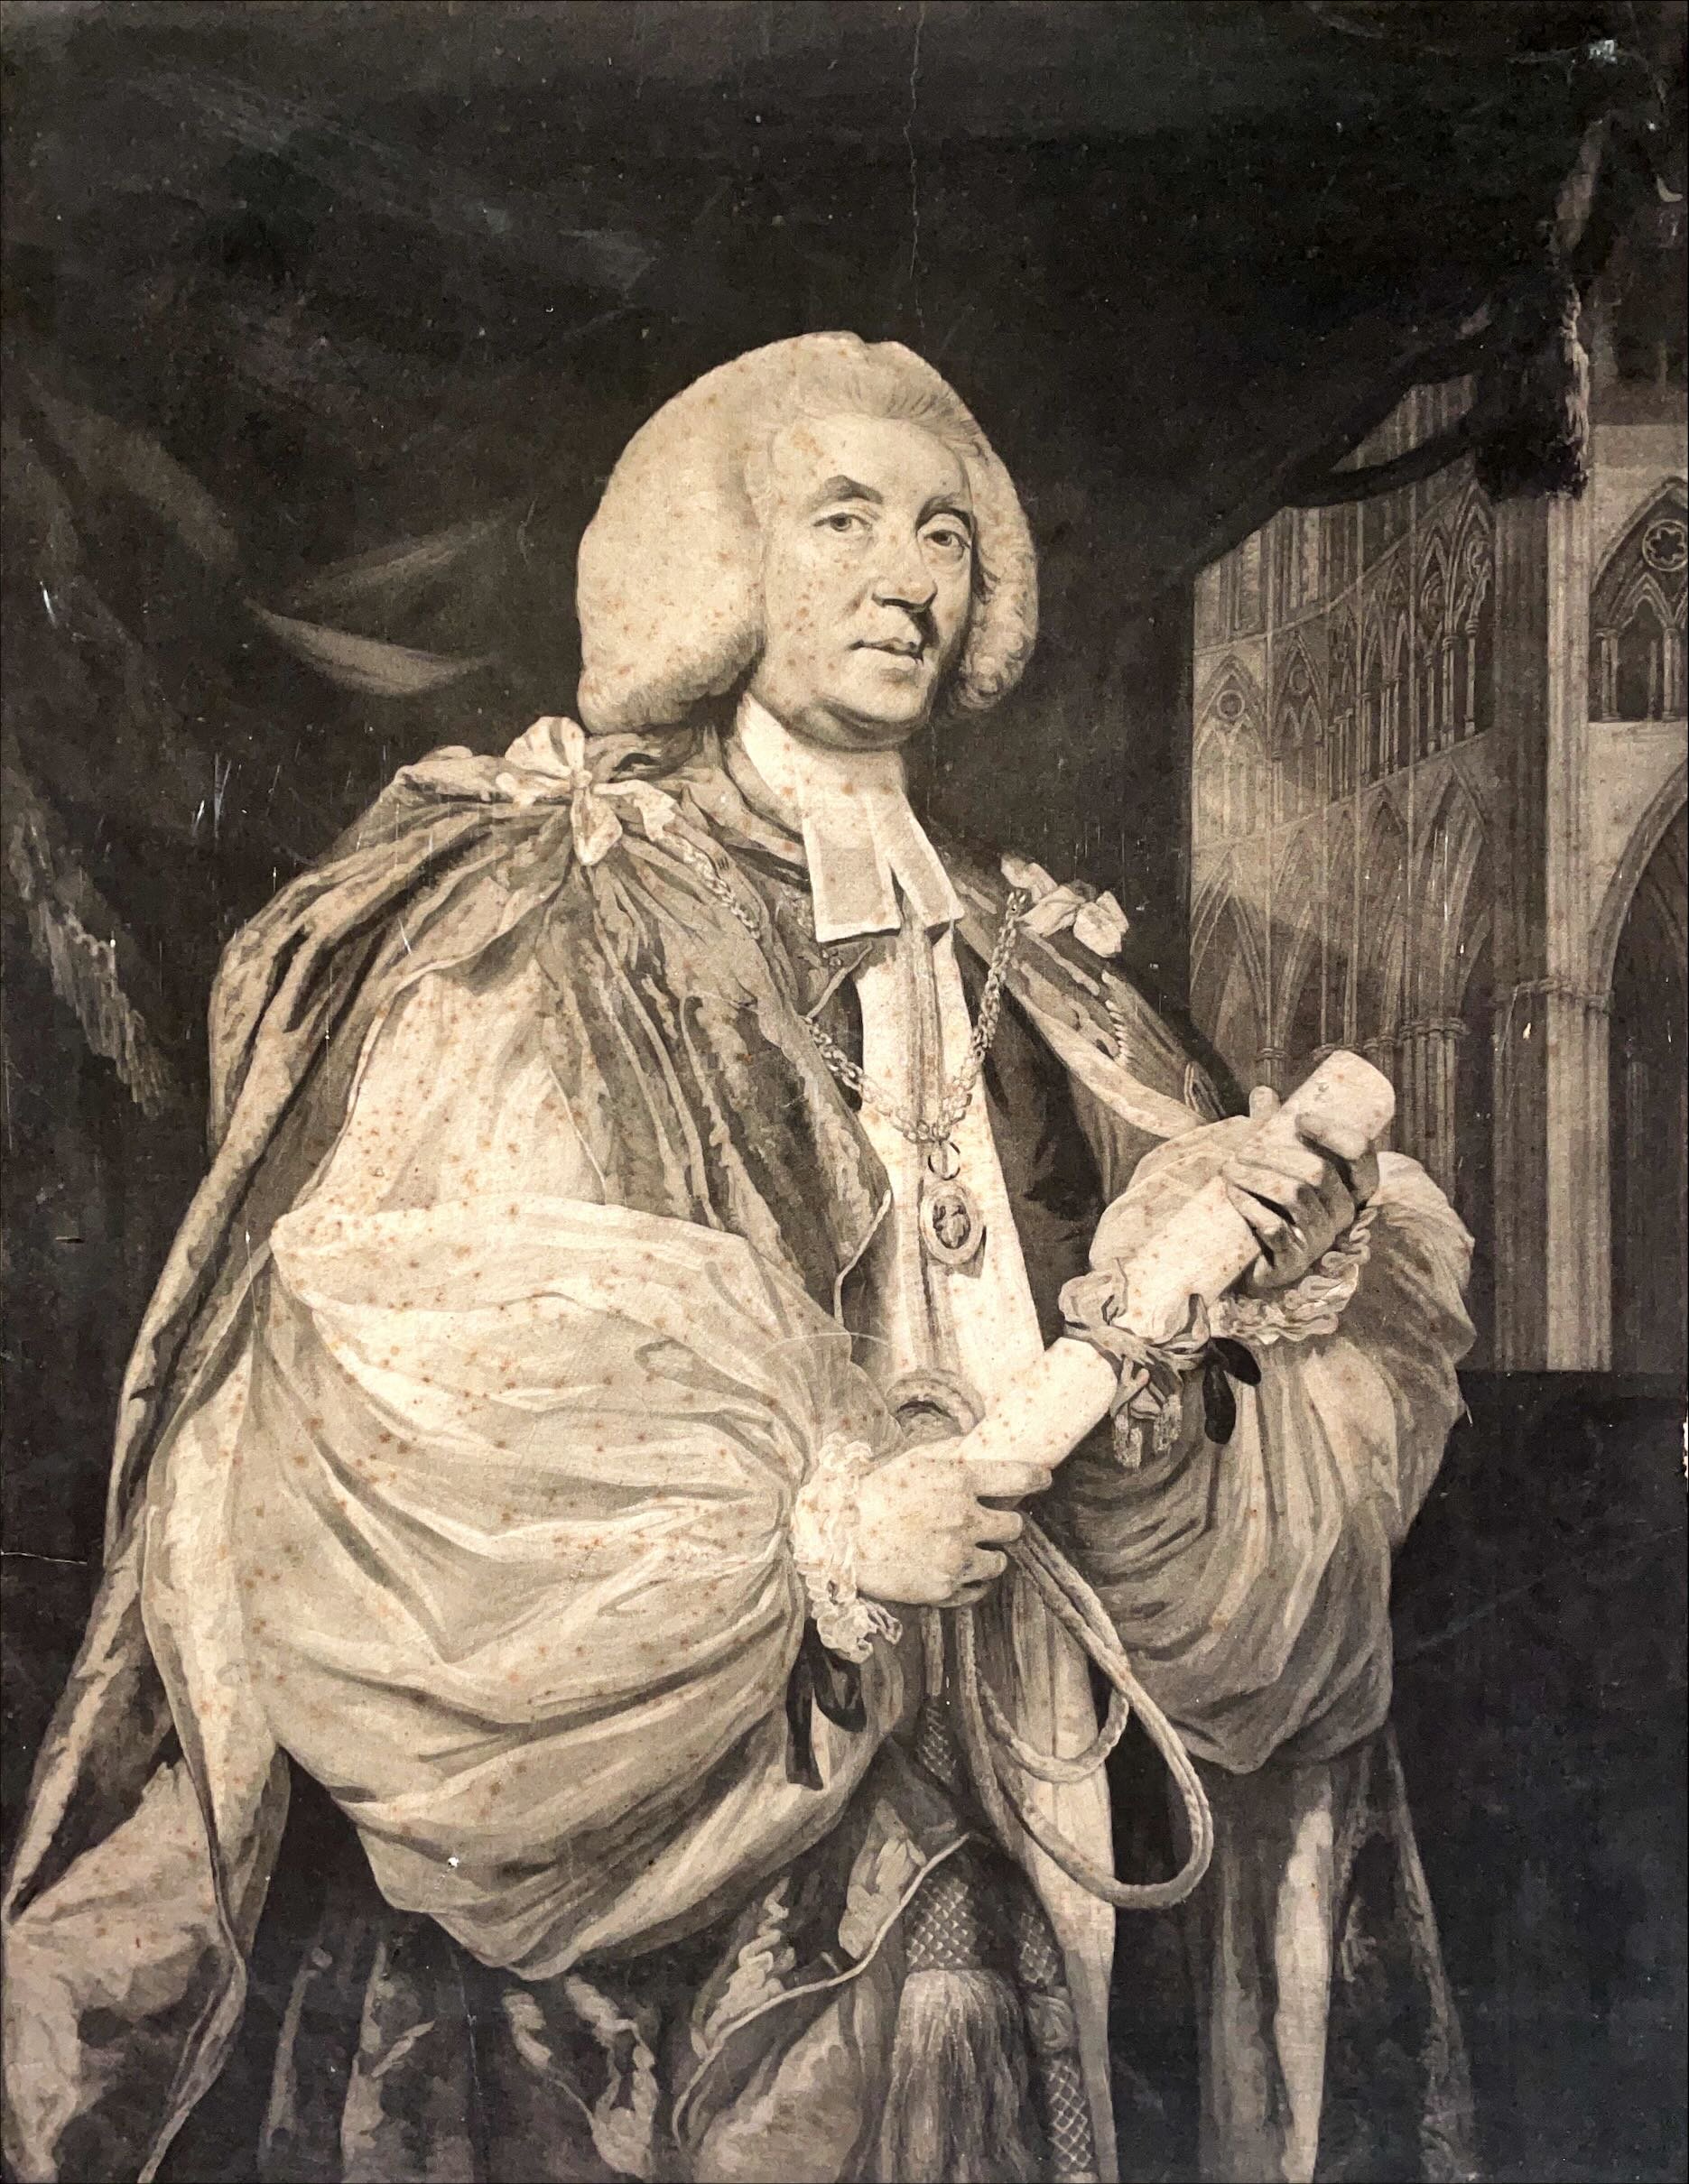 Bishop John Thomas, 1774-1793